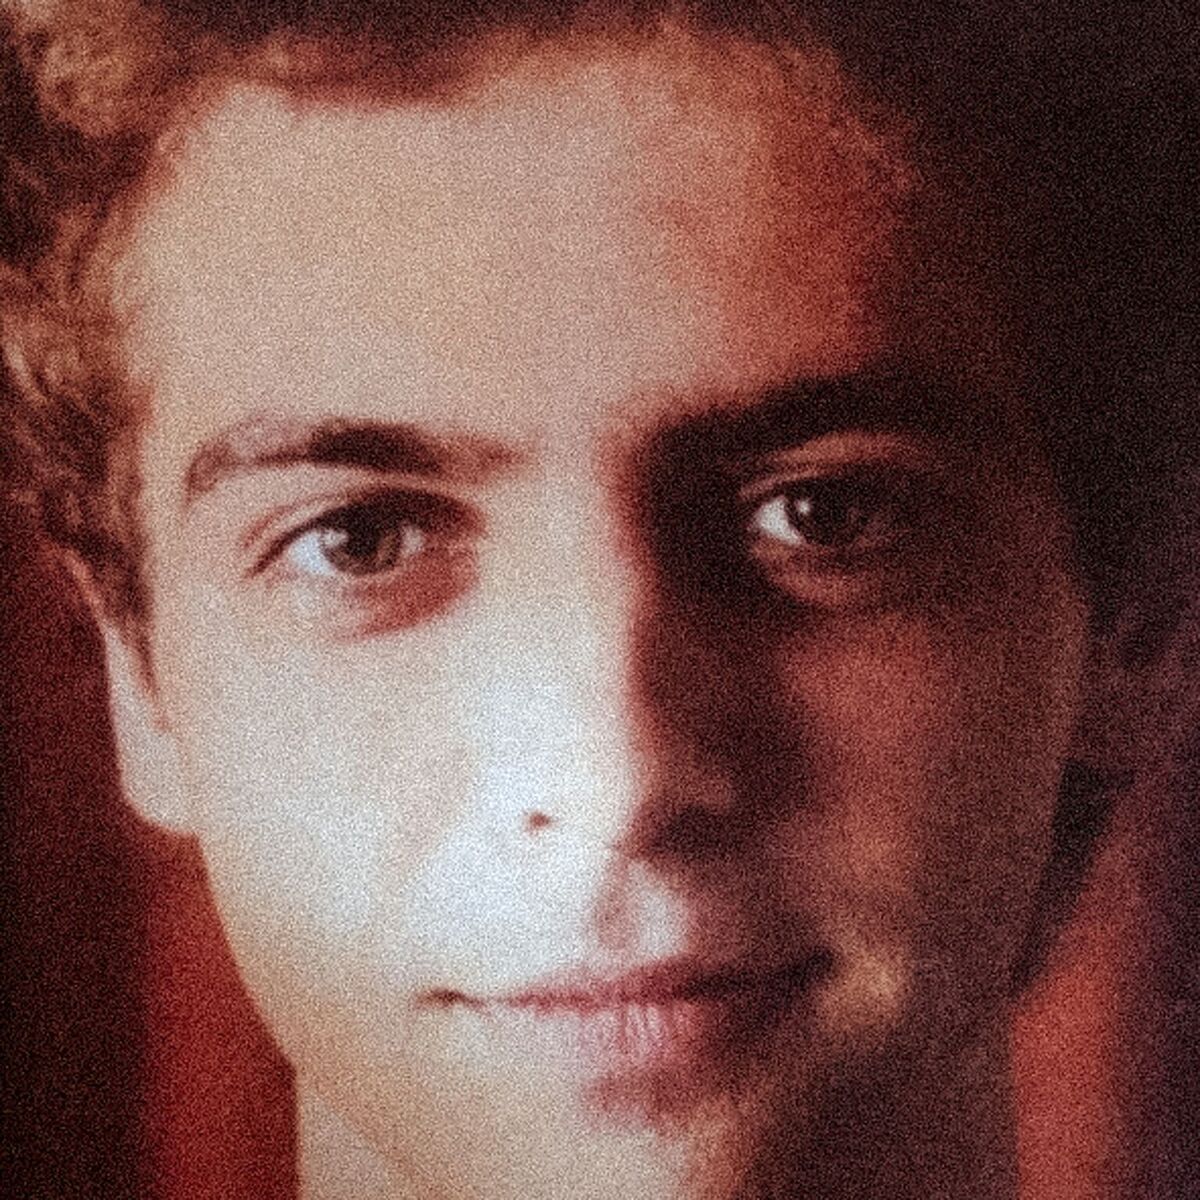 Albumcover von I SALUTE - How you like Me now; verrauschtes Foto von einem weißen jungen Mann mit braunen Augen, der in die Kamera schaut und kaum merklich lächelt